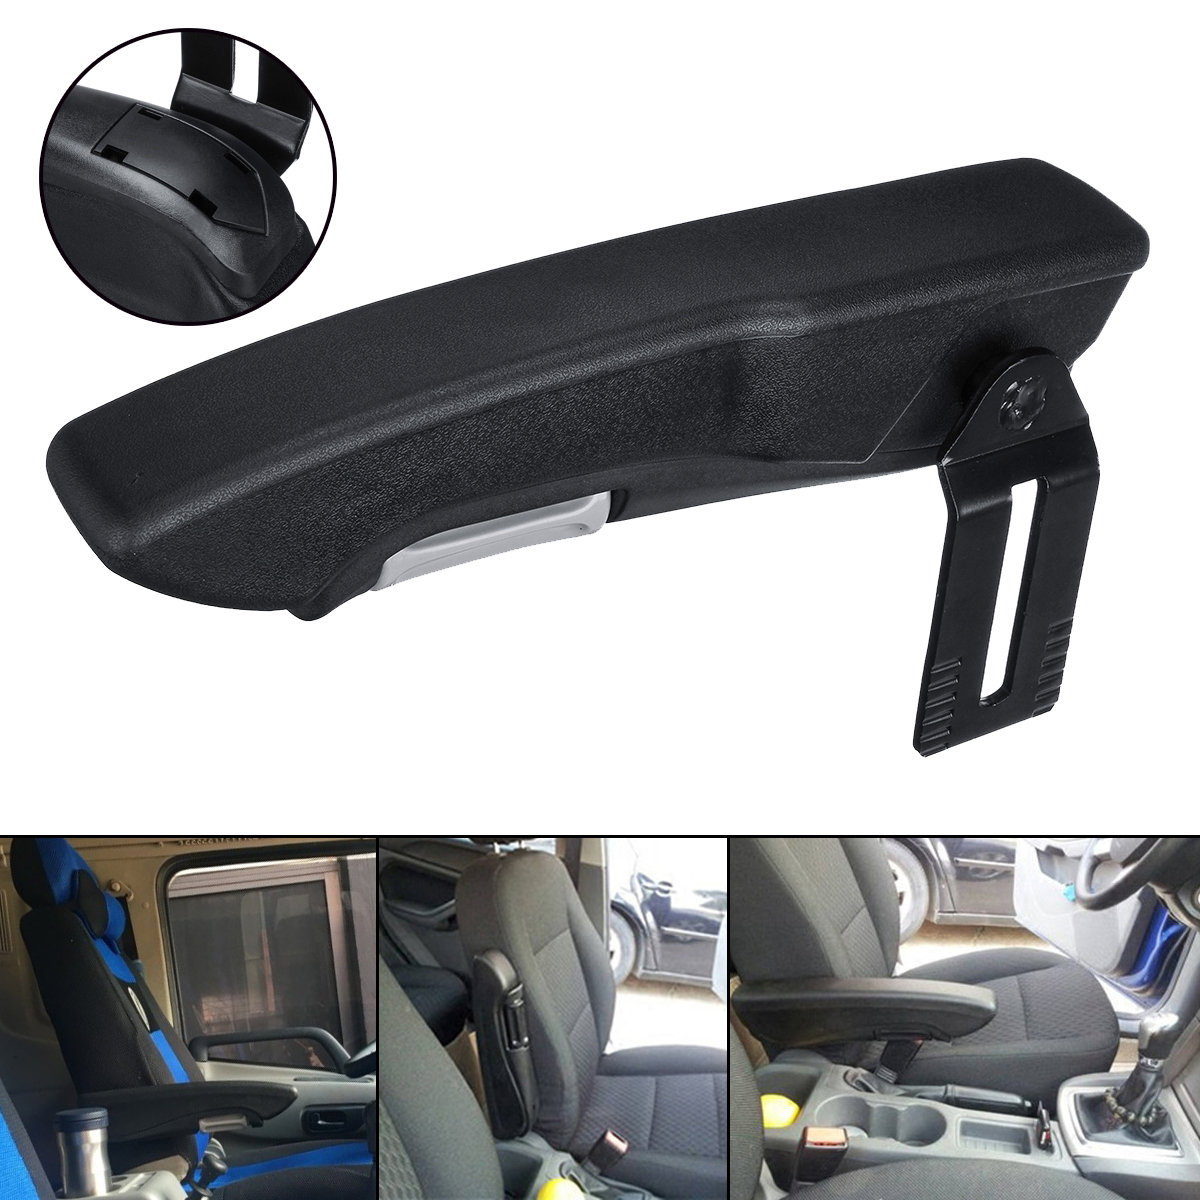 

Universal Left/Right Side Car RV Seat Armrest Console Adjustable Hand Holder For Camper Van Motorhome Boat Truck